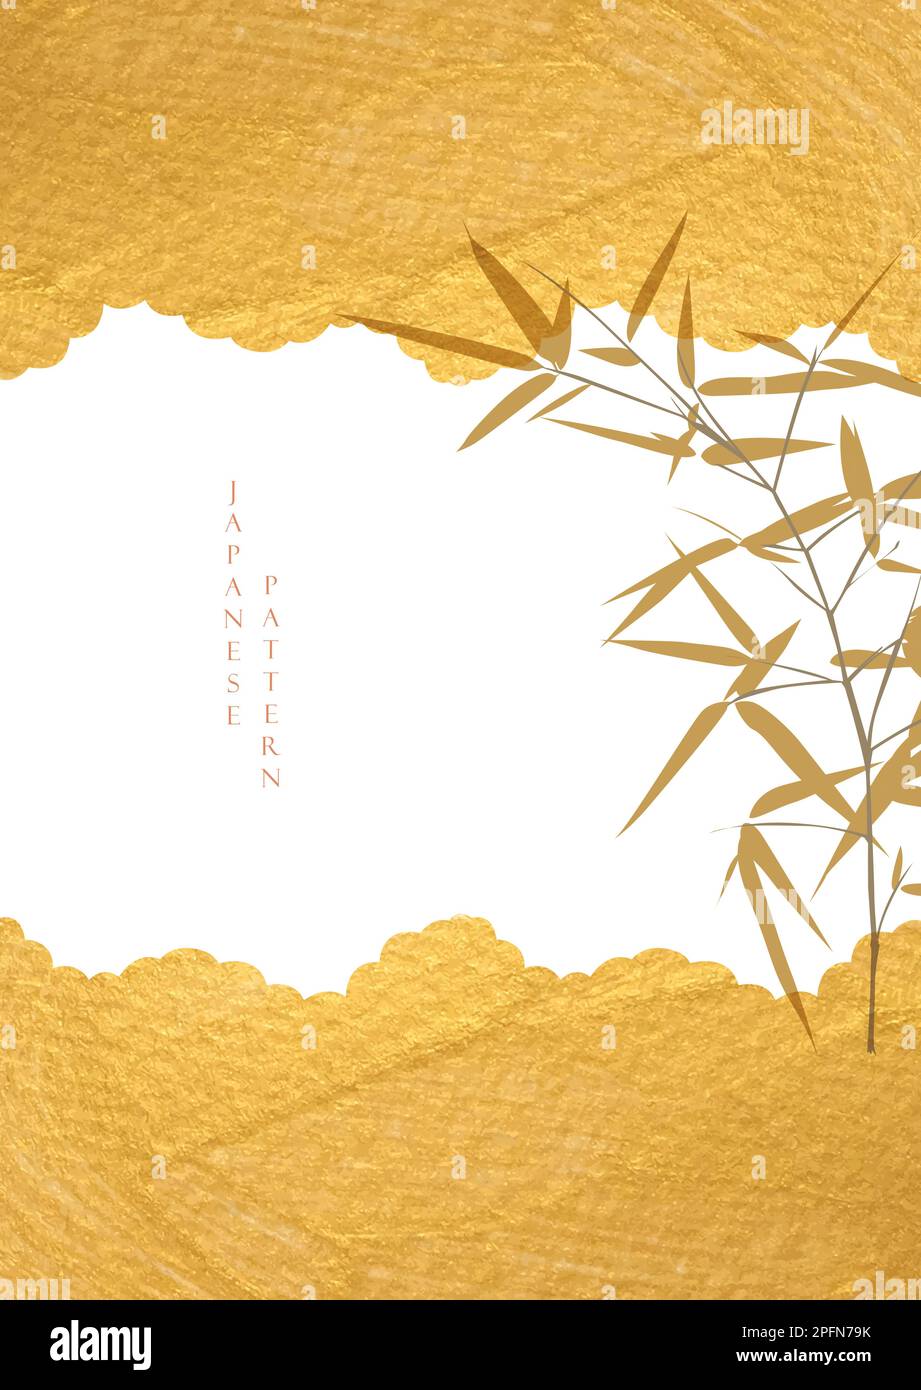 Japanischer Hintergrund mit goldenem Texturvektor. Bambuszweig mit geometrischem Muster im Vintage-Stil. Stock Vektor